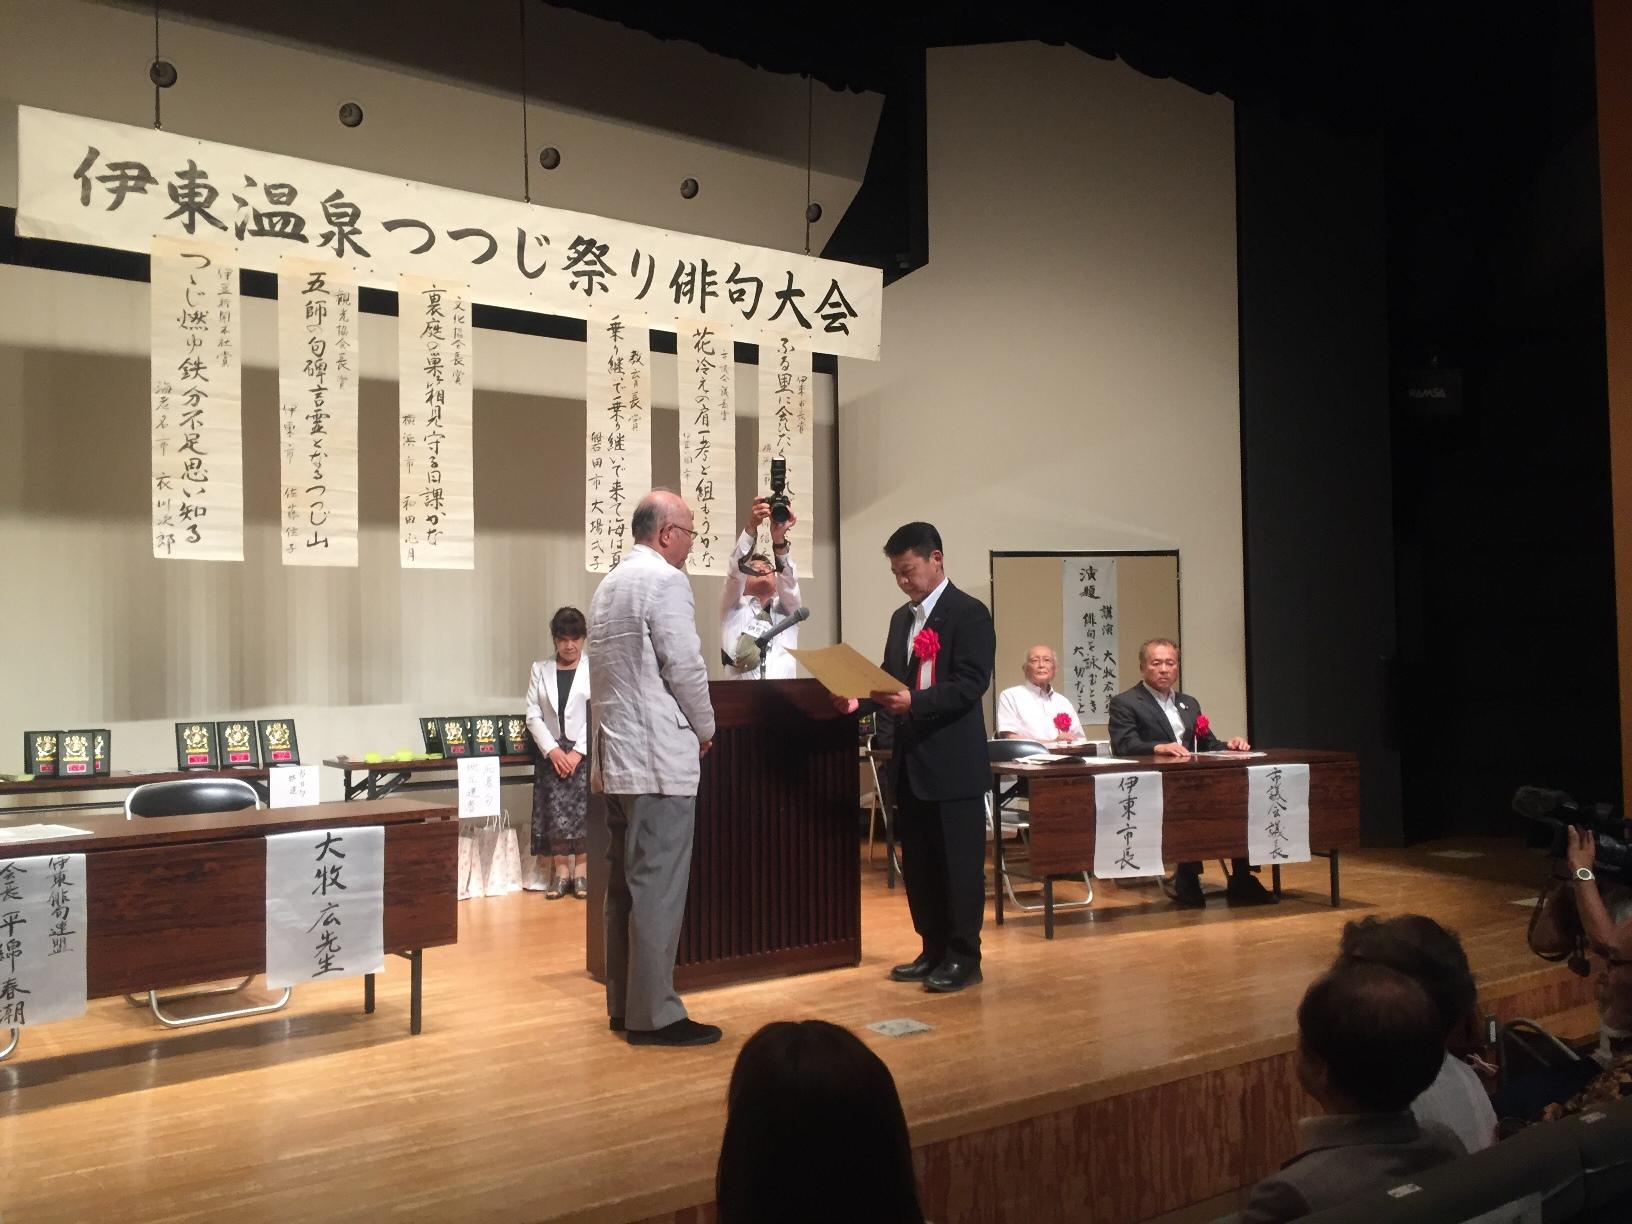 2017年7月13日伊東温泉つつじ祭り俳句大会で表彰する市長の写真